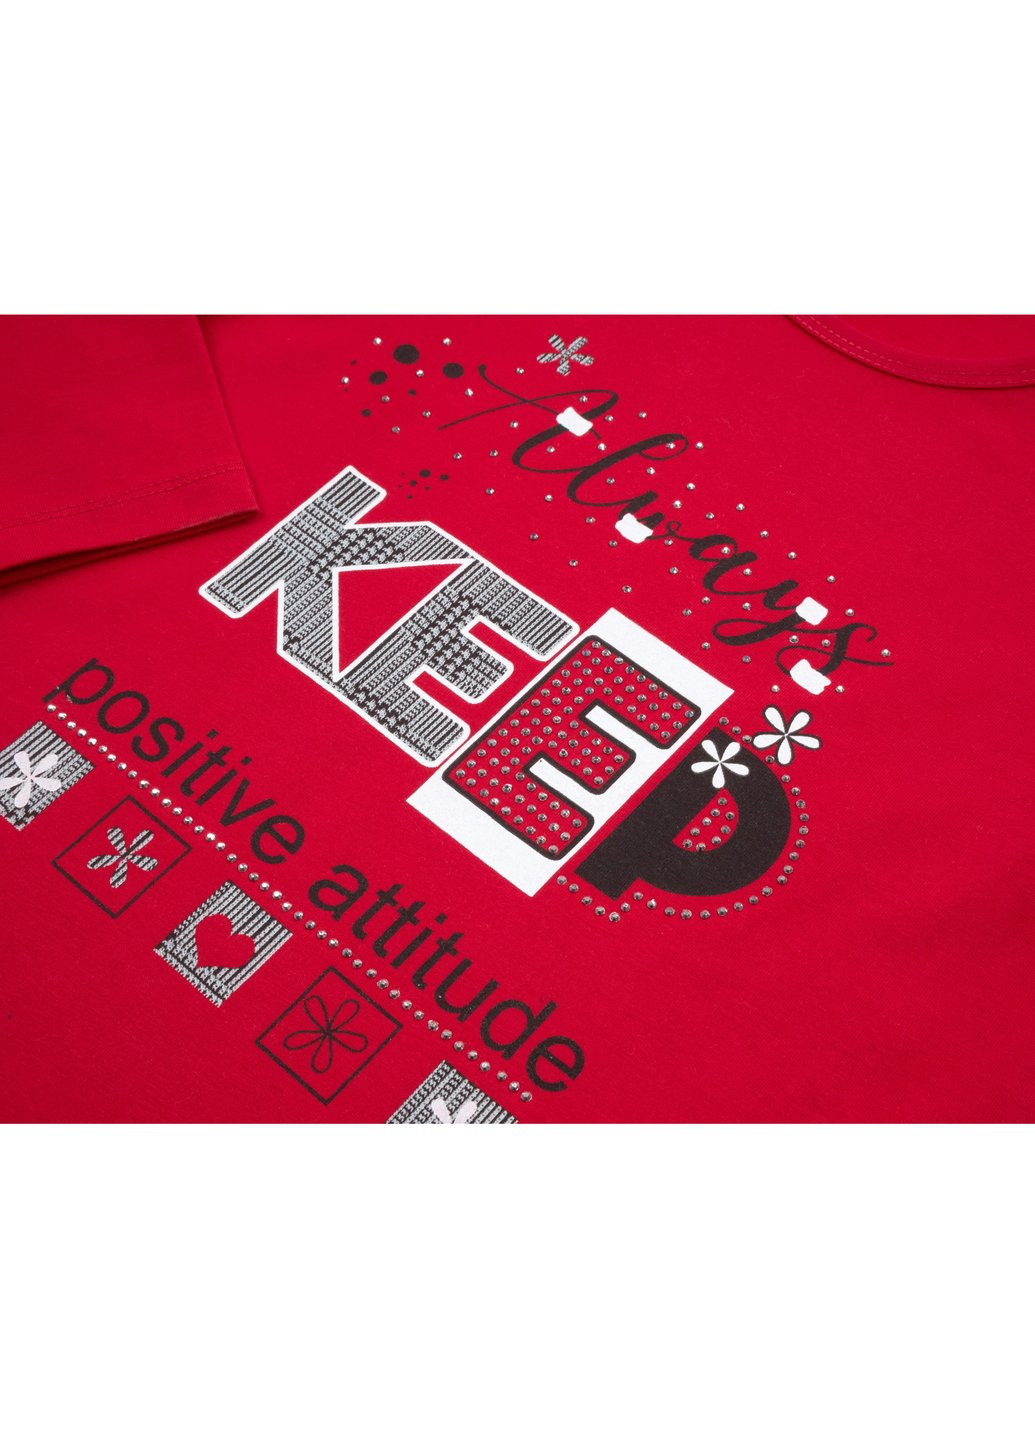 Комбинированный демисезонный набор детской одежды "always keep positive attitude" (13591-116g-red) Breeze